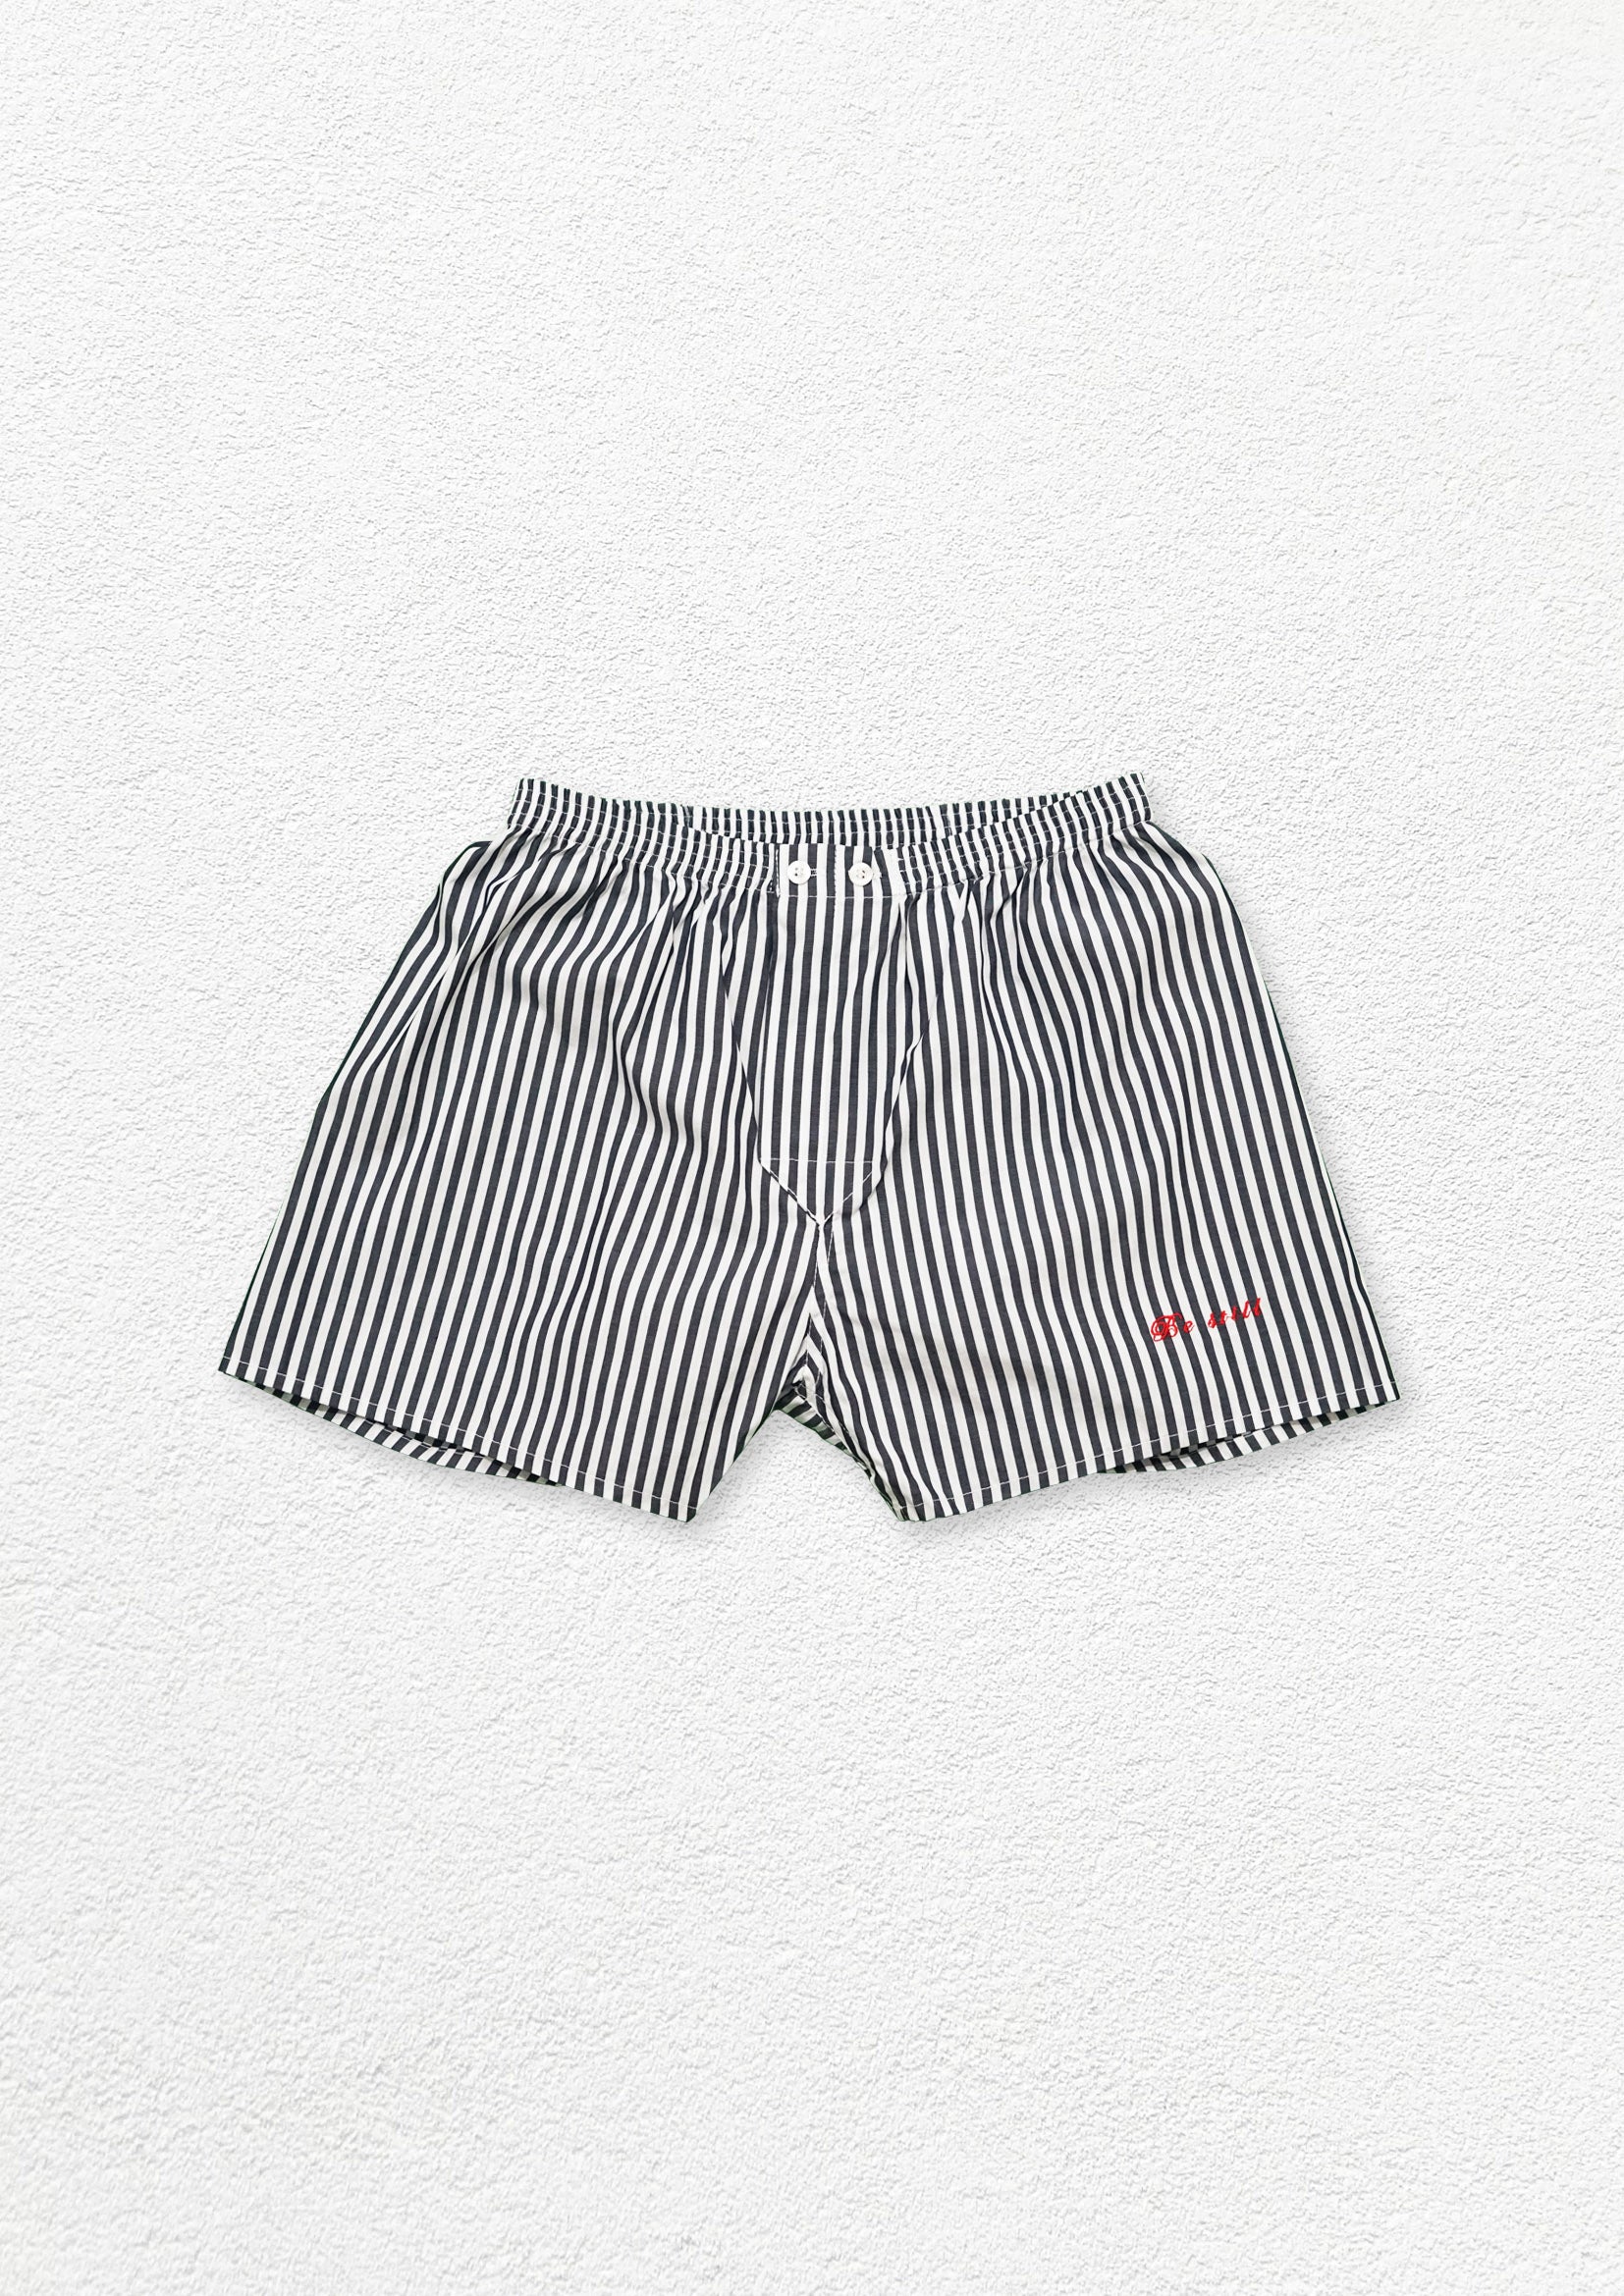 Unisex striped boxer shorts underwear - black